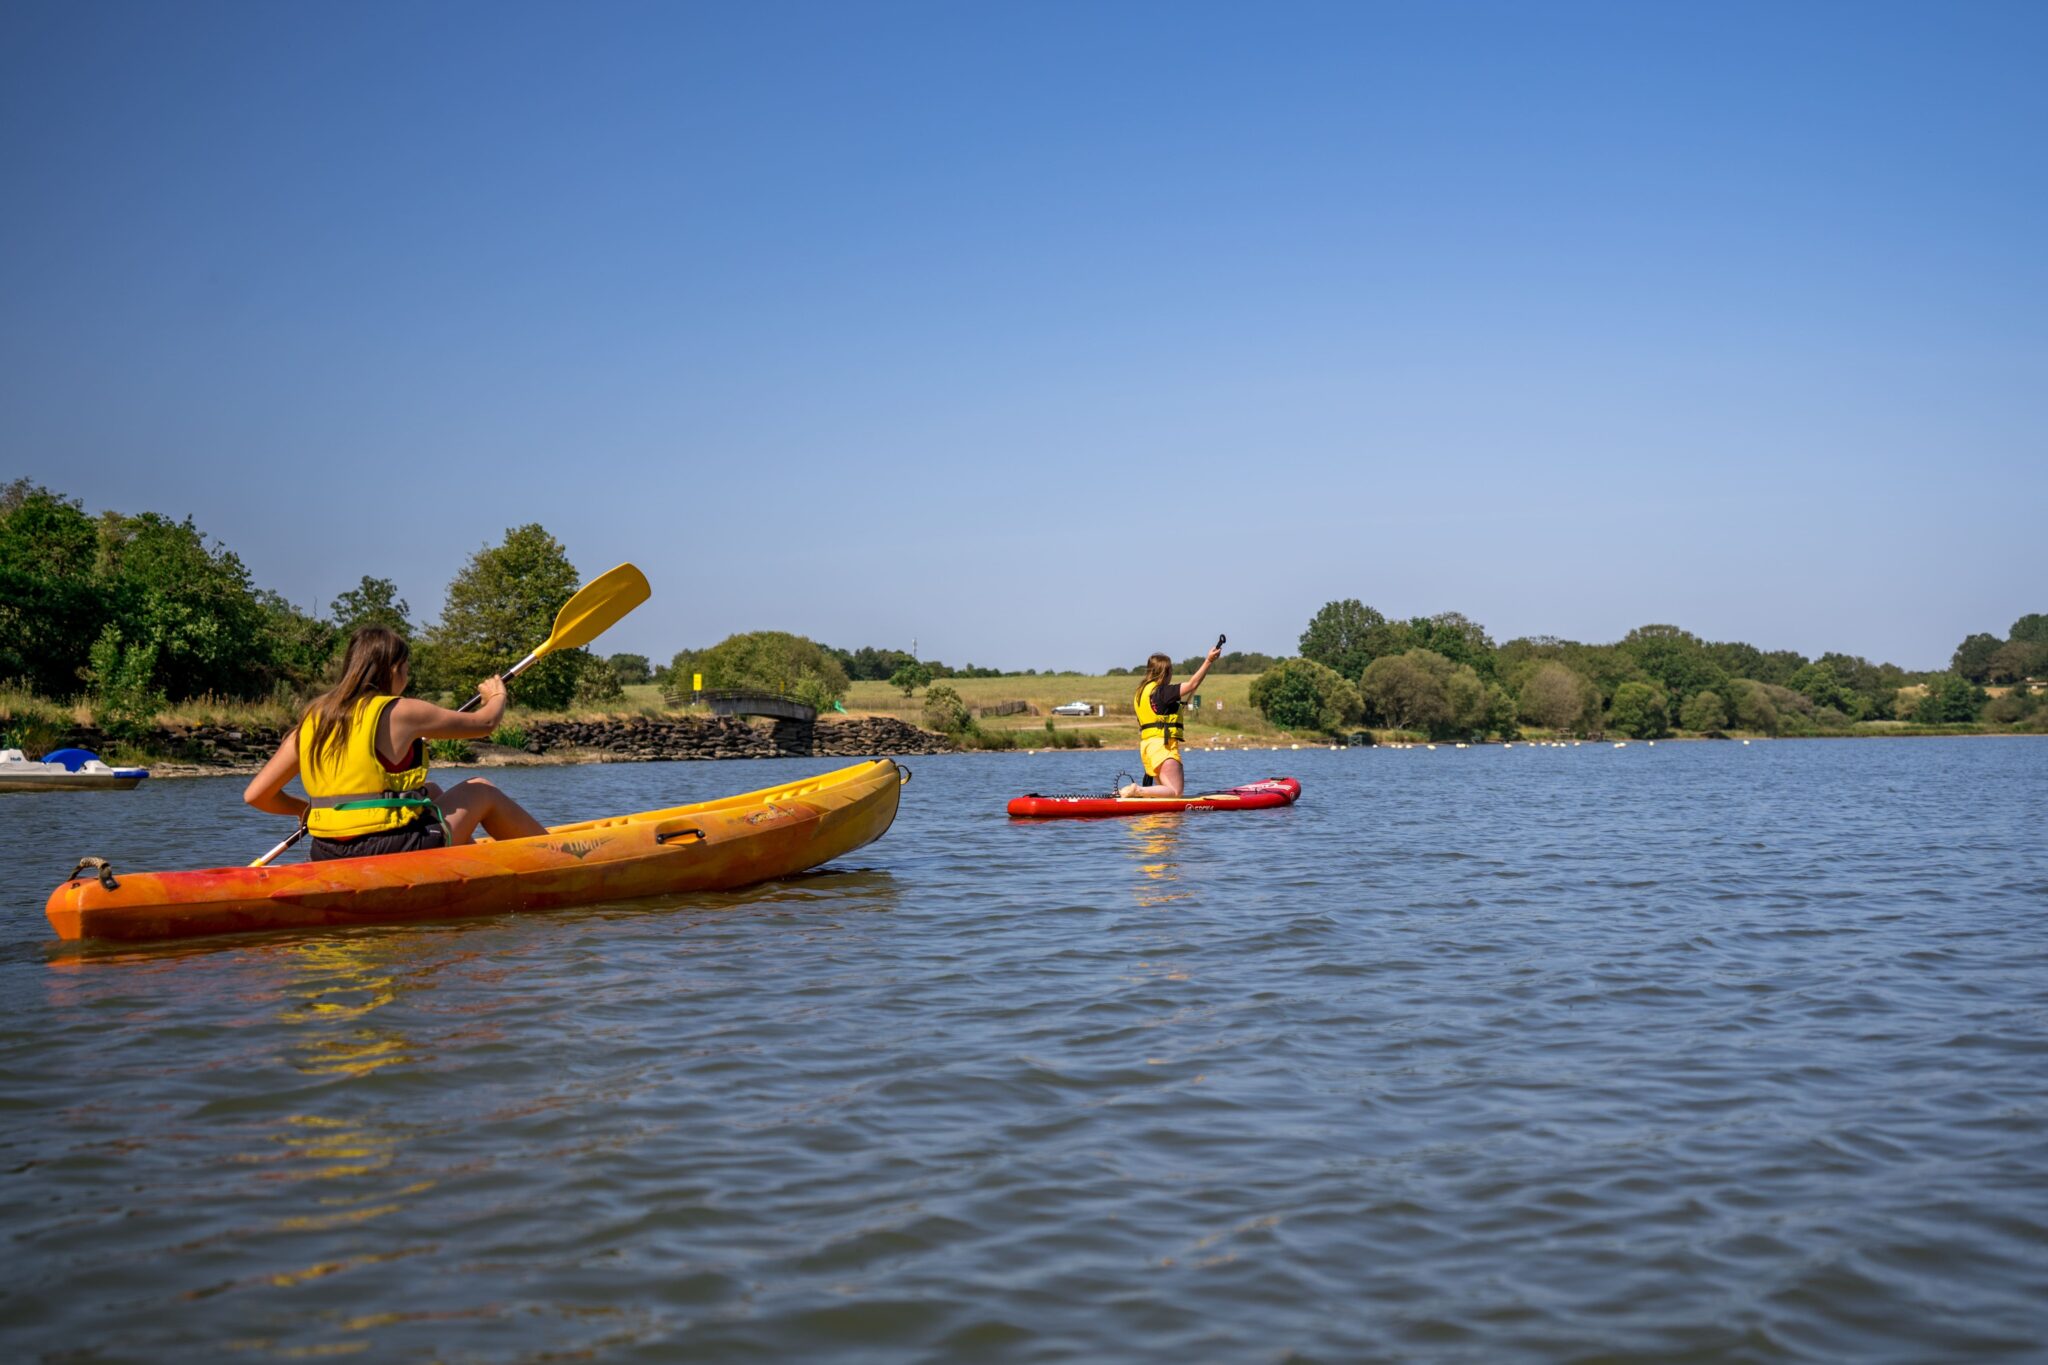 anjou sport naturee base de loisirs proche d'angers maine-et-loire mayenne baignade gratuite aquaparc location canoe-kayak